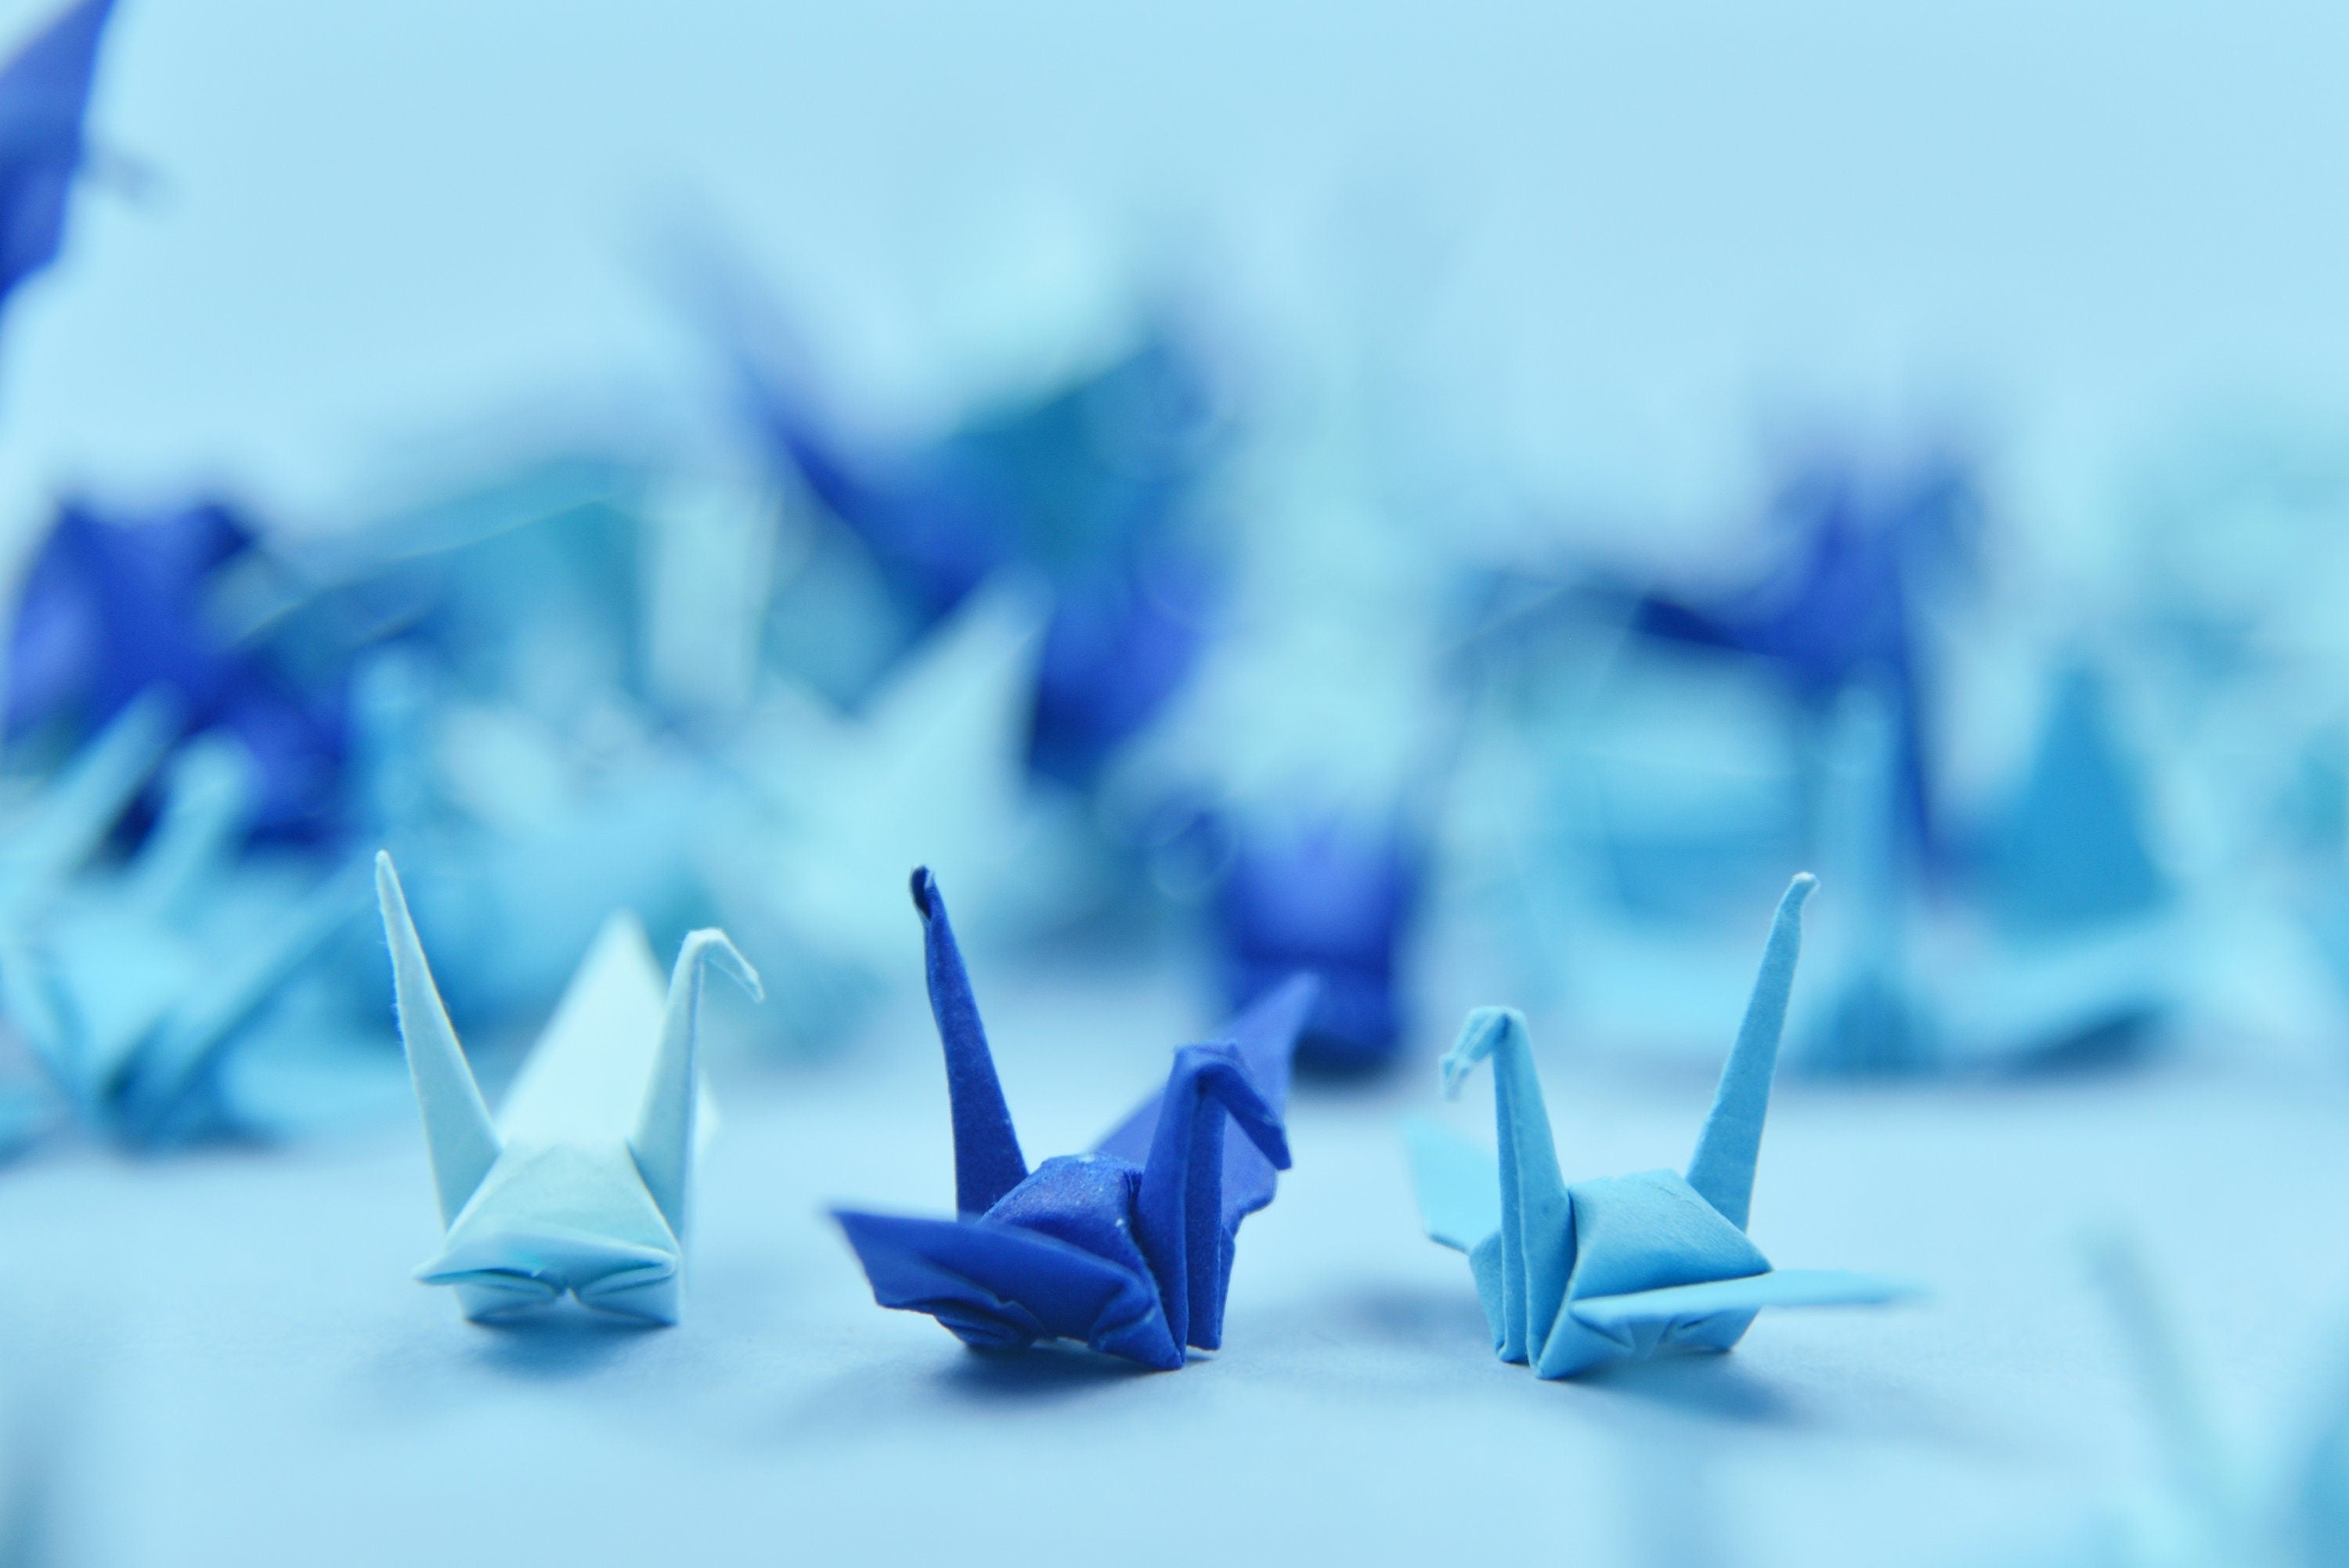 100 gru di carta origami blu navy - piccole 1,5 pollici - piegate a mano per la decorazione di nozze